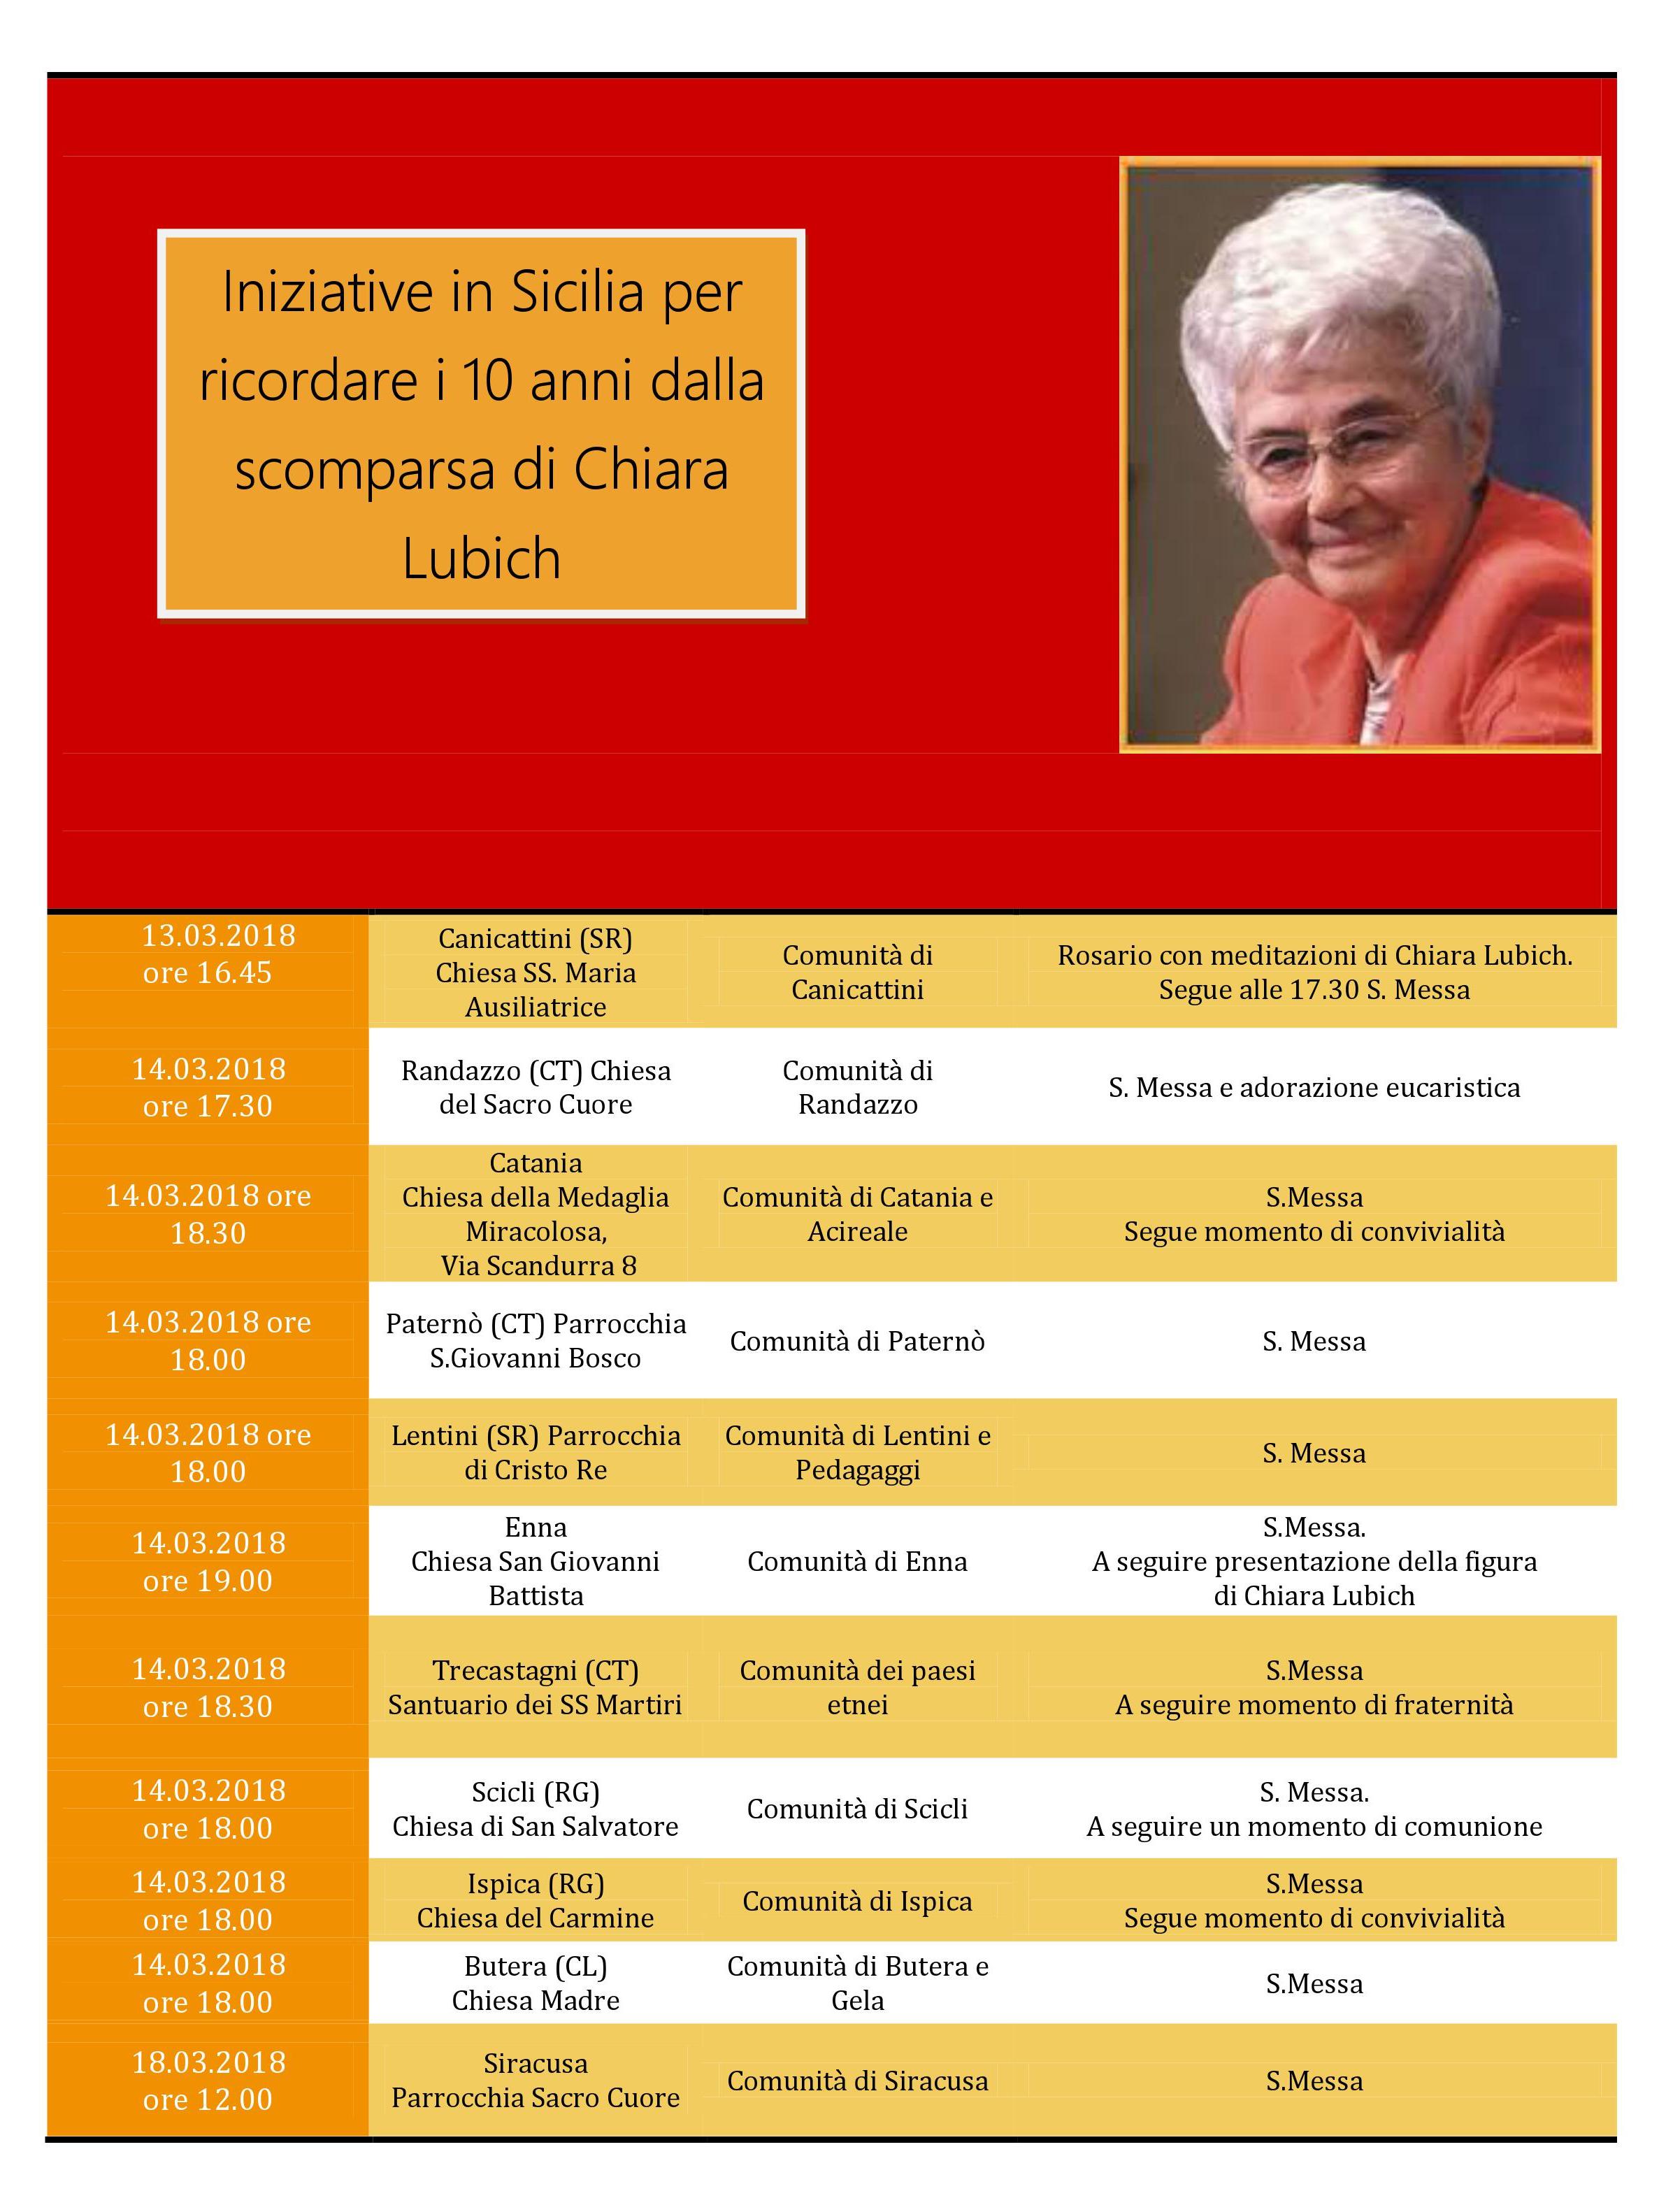 Chiara Lubich oggi, a dieci anni dalla sua scomparsa: altre iniziative in Sicilia